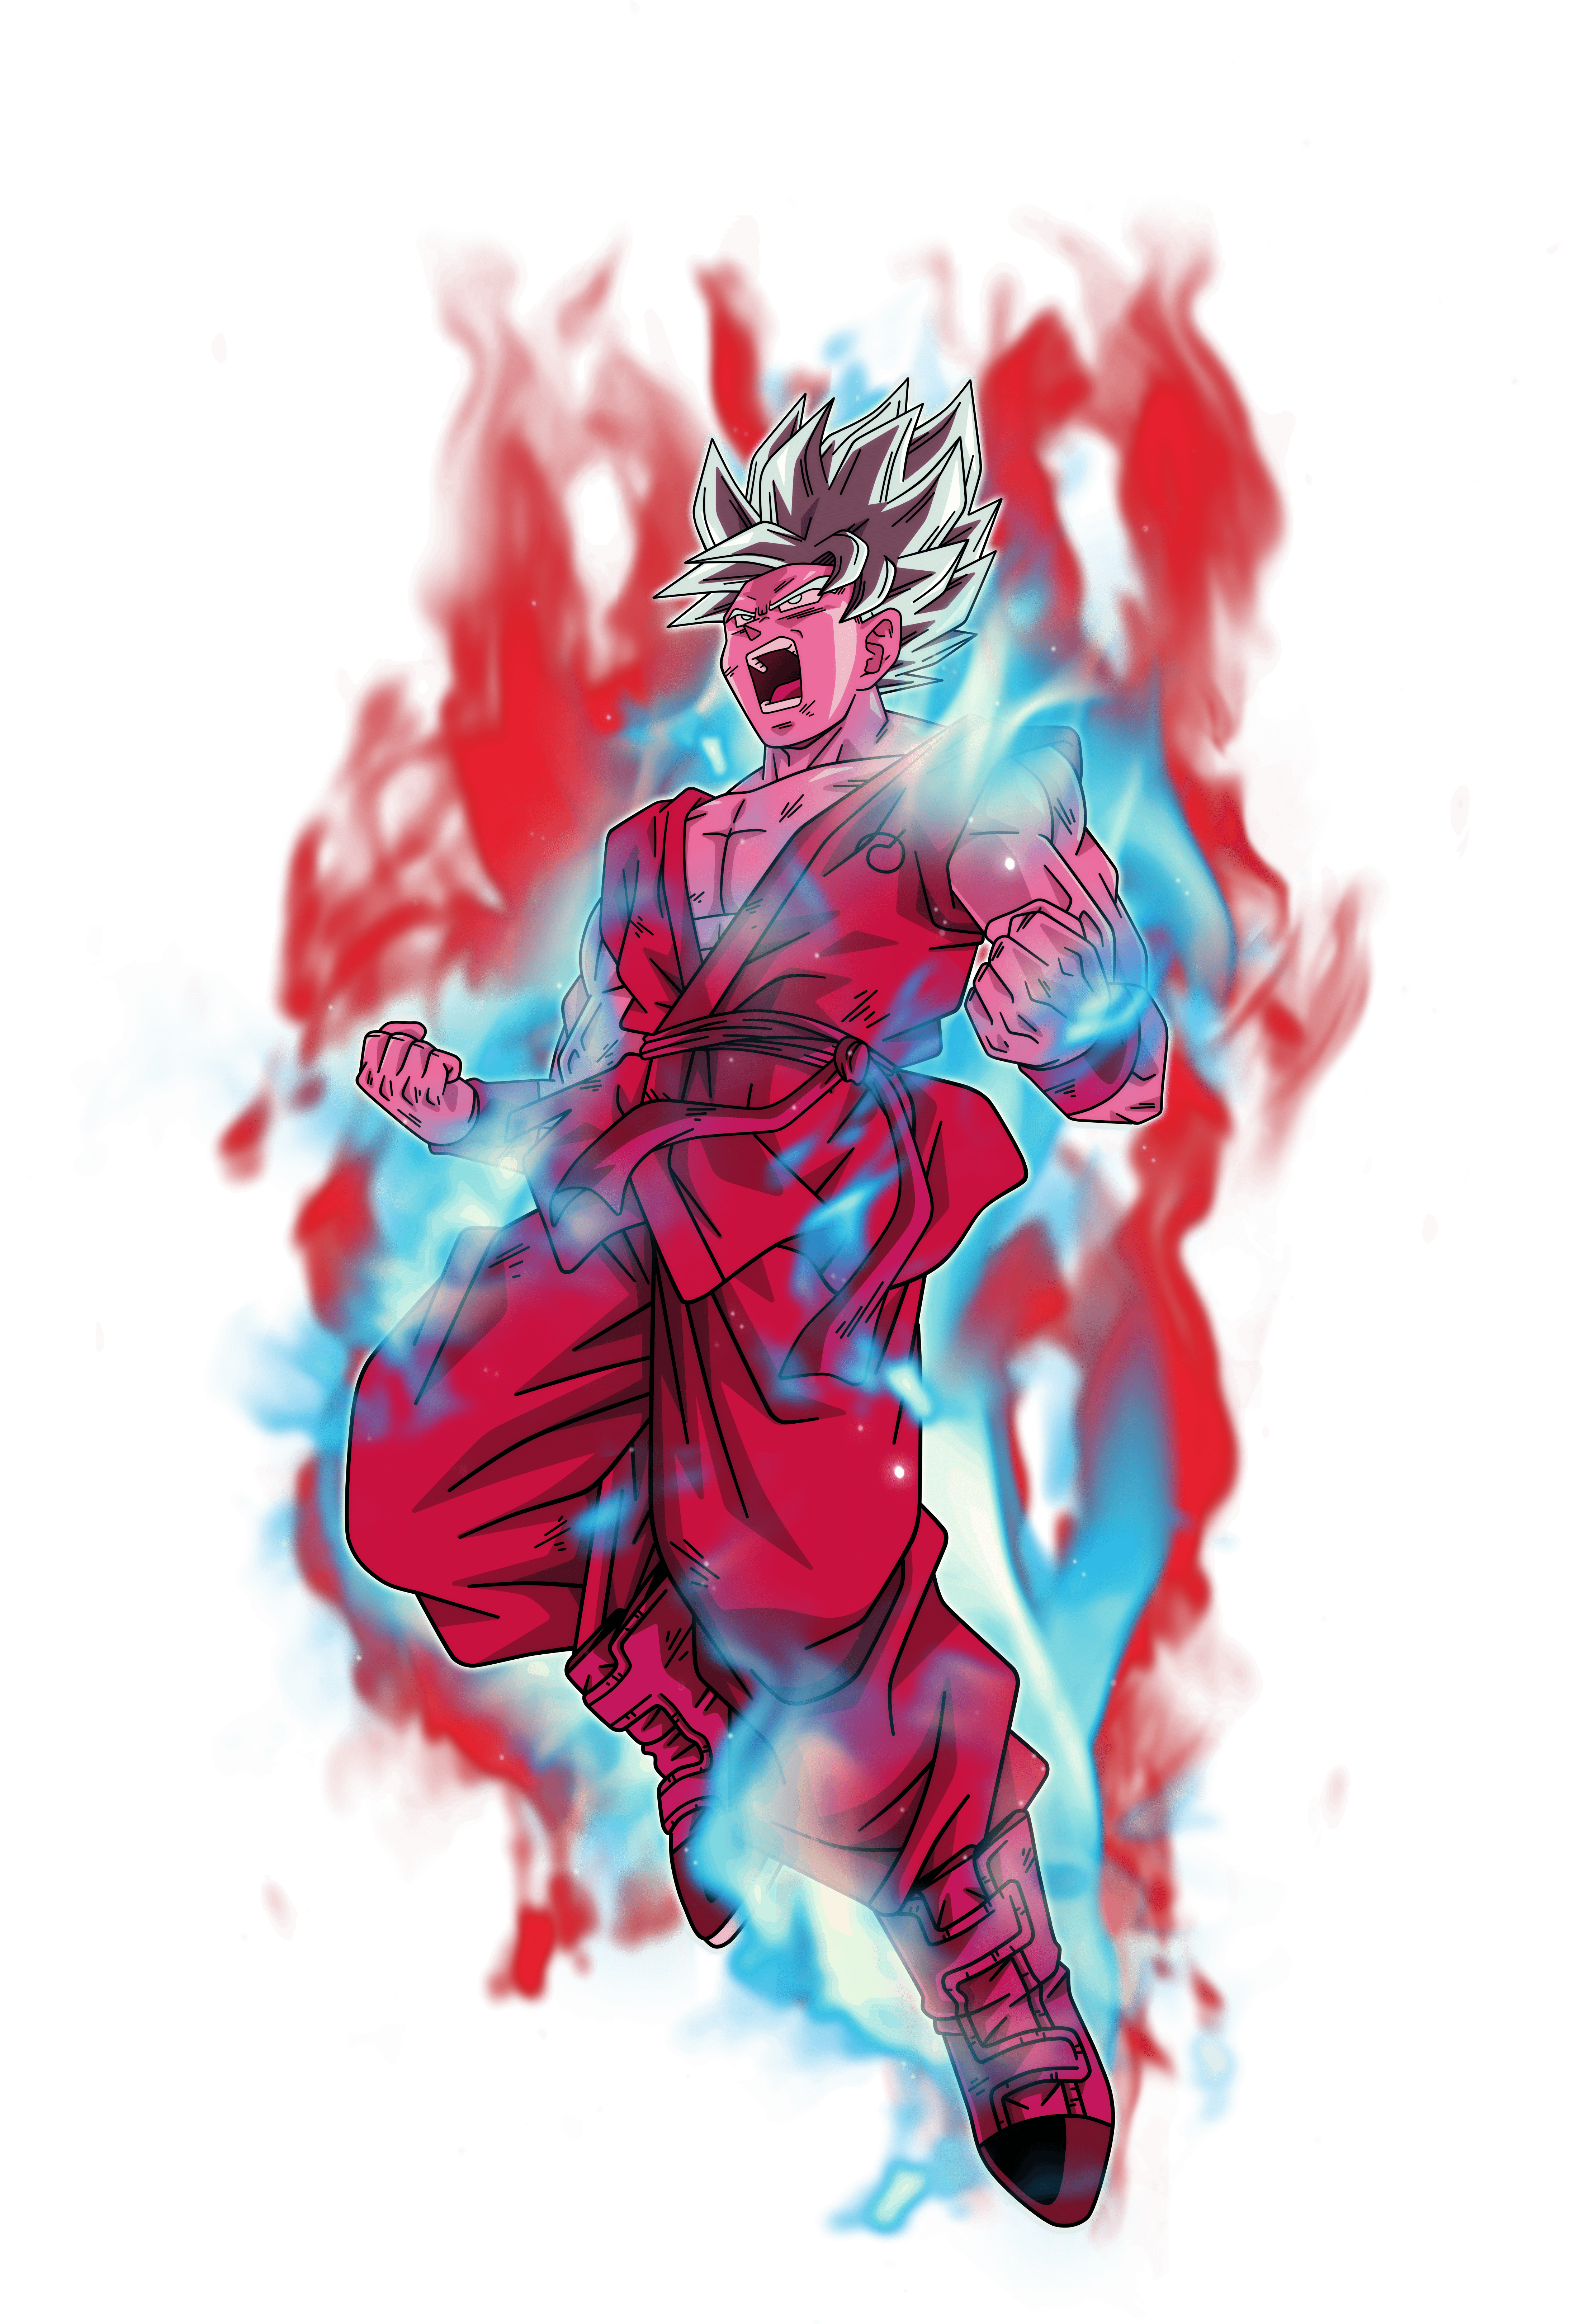 Goku super saiyan Blue kaioken x10